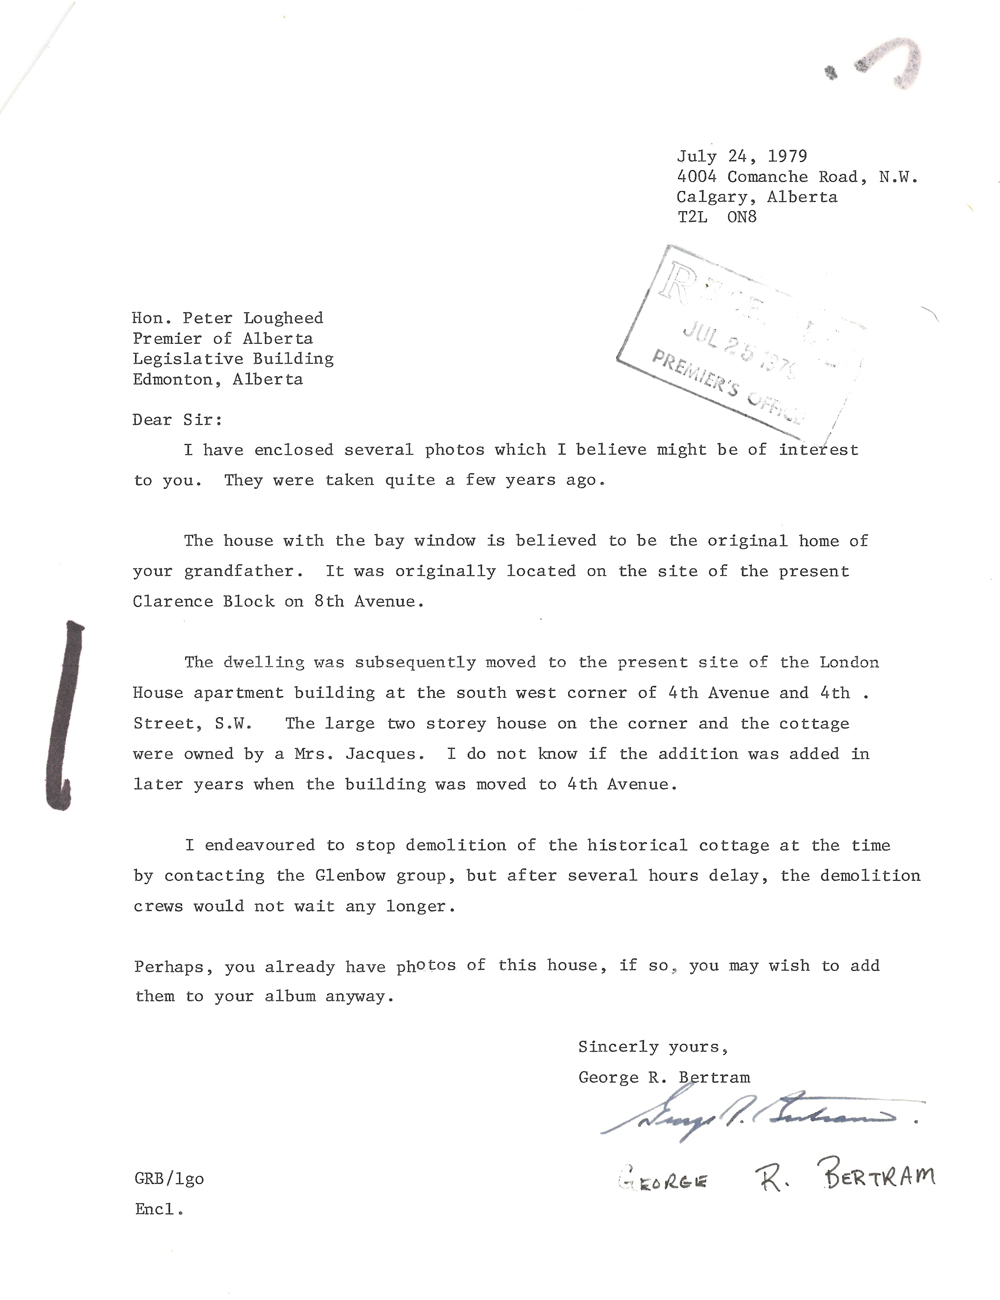 Lettre de George Bertram à Peter Lougheed en date de juillet 1979 accompagnant des photos de la maison Lougheed originale